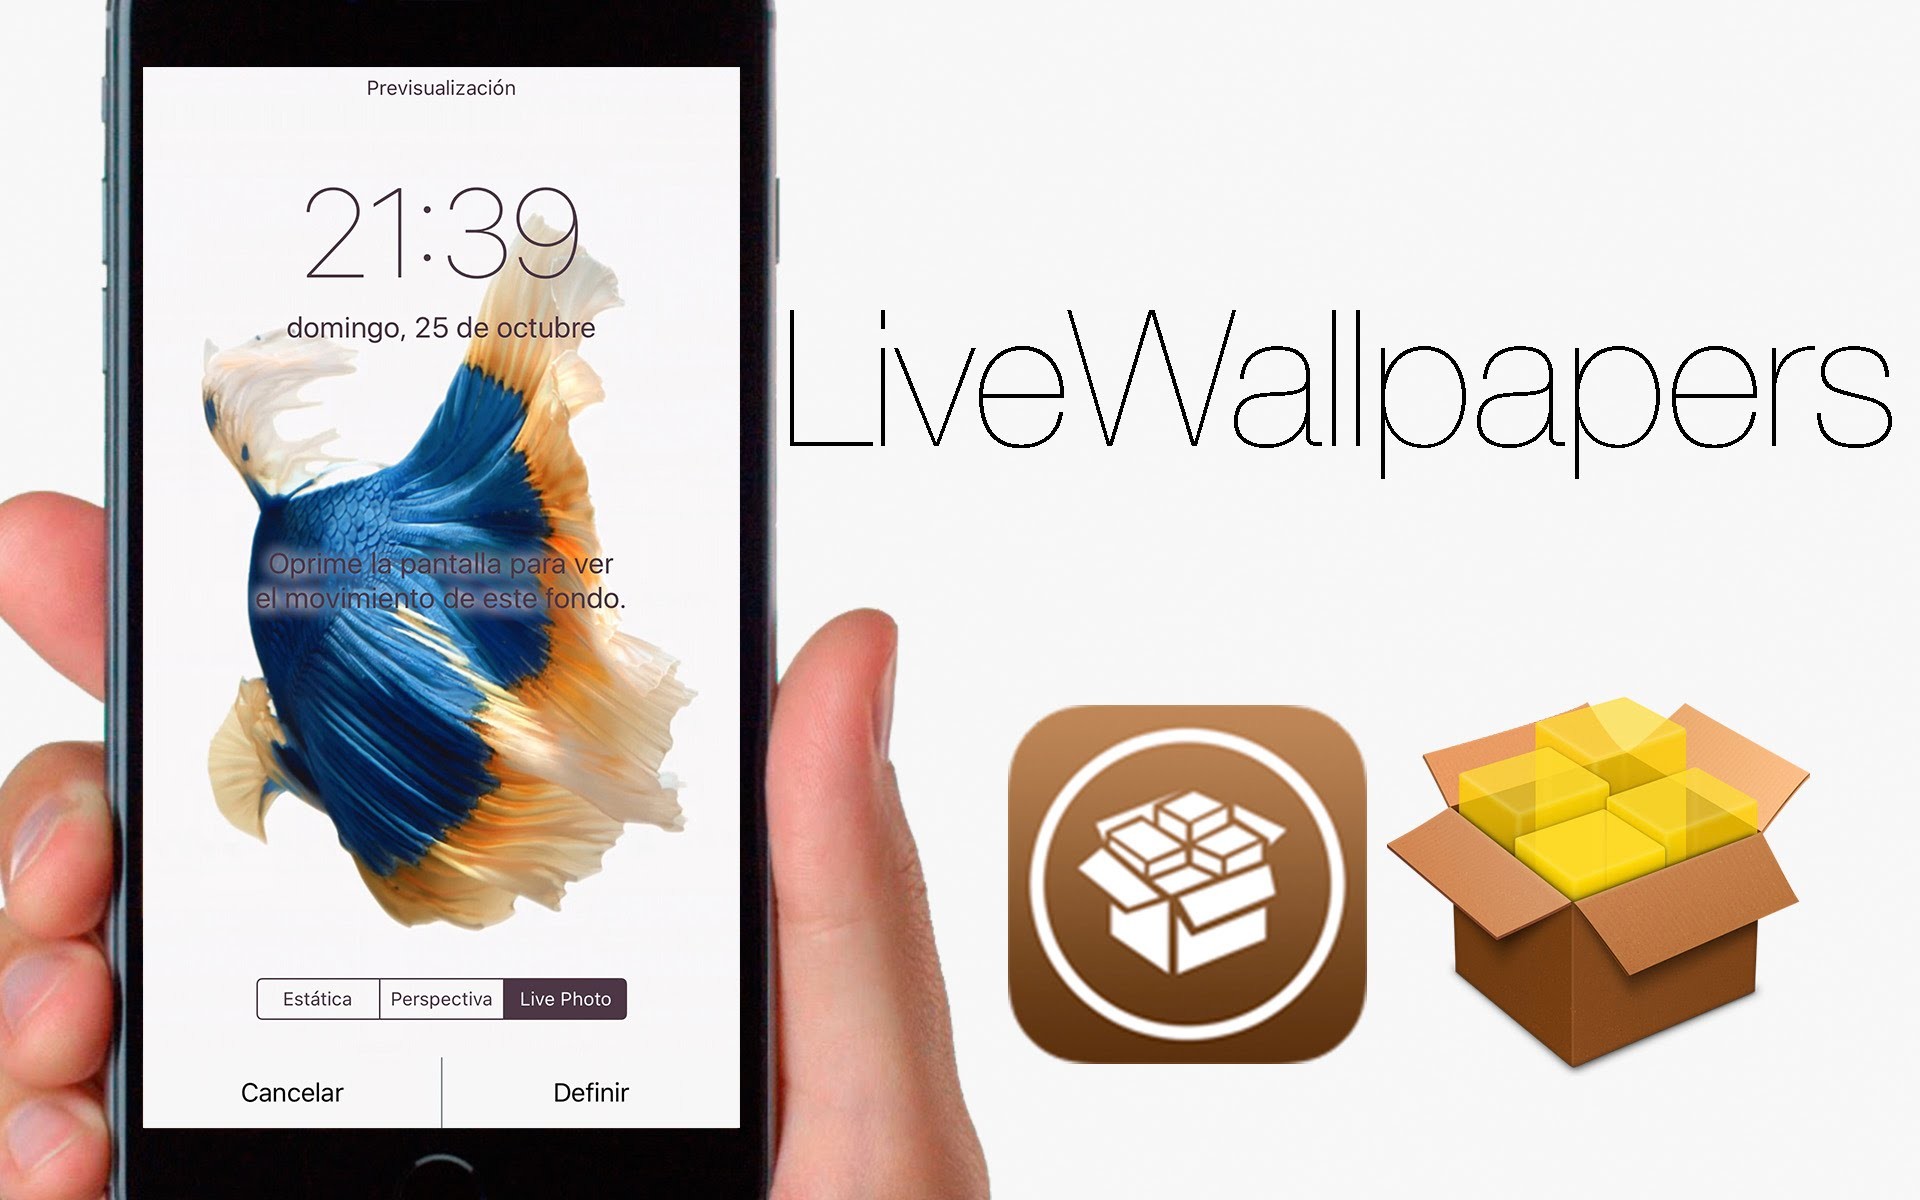 1920x1200 LiveWallpapers del iPhone 6s en dispositivos anteriores | Cydia iOS 9